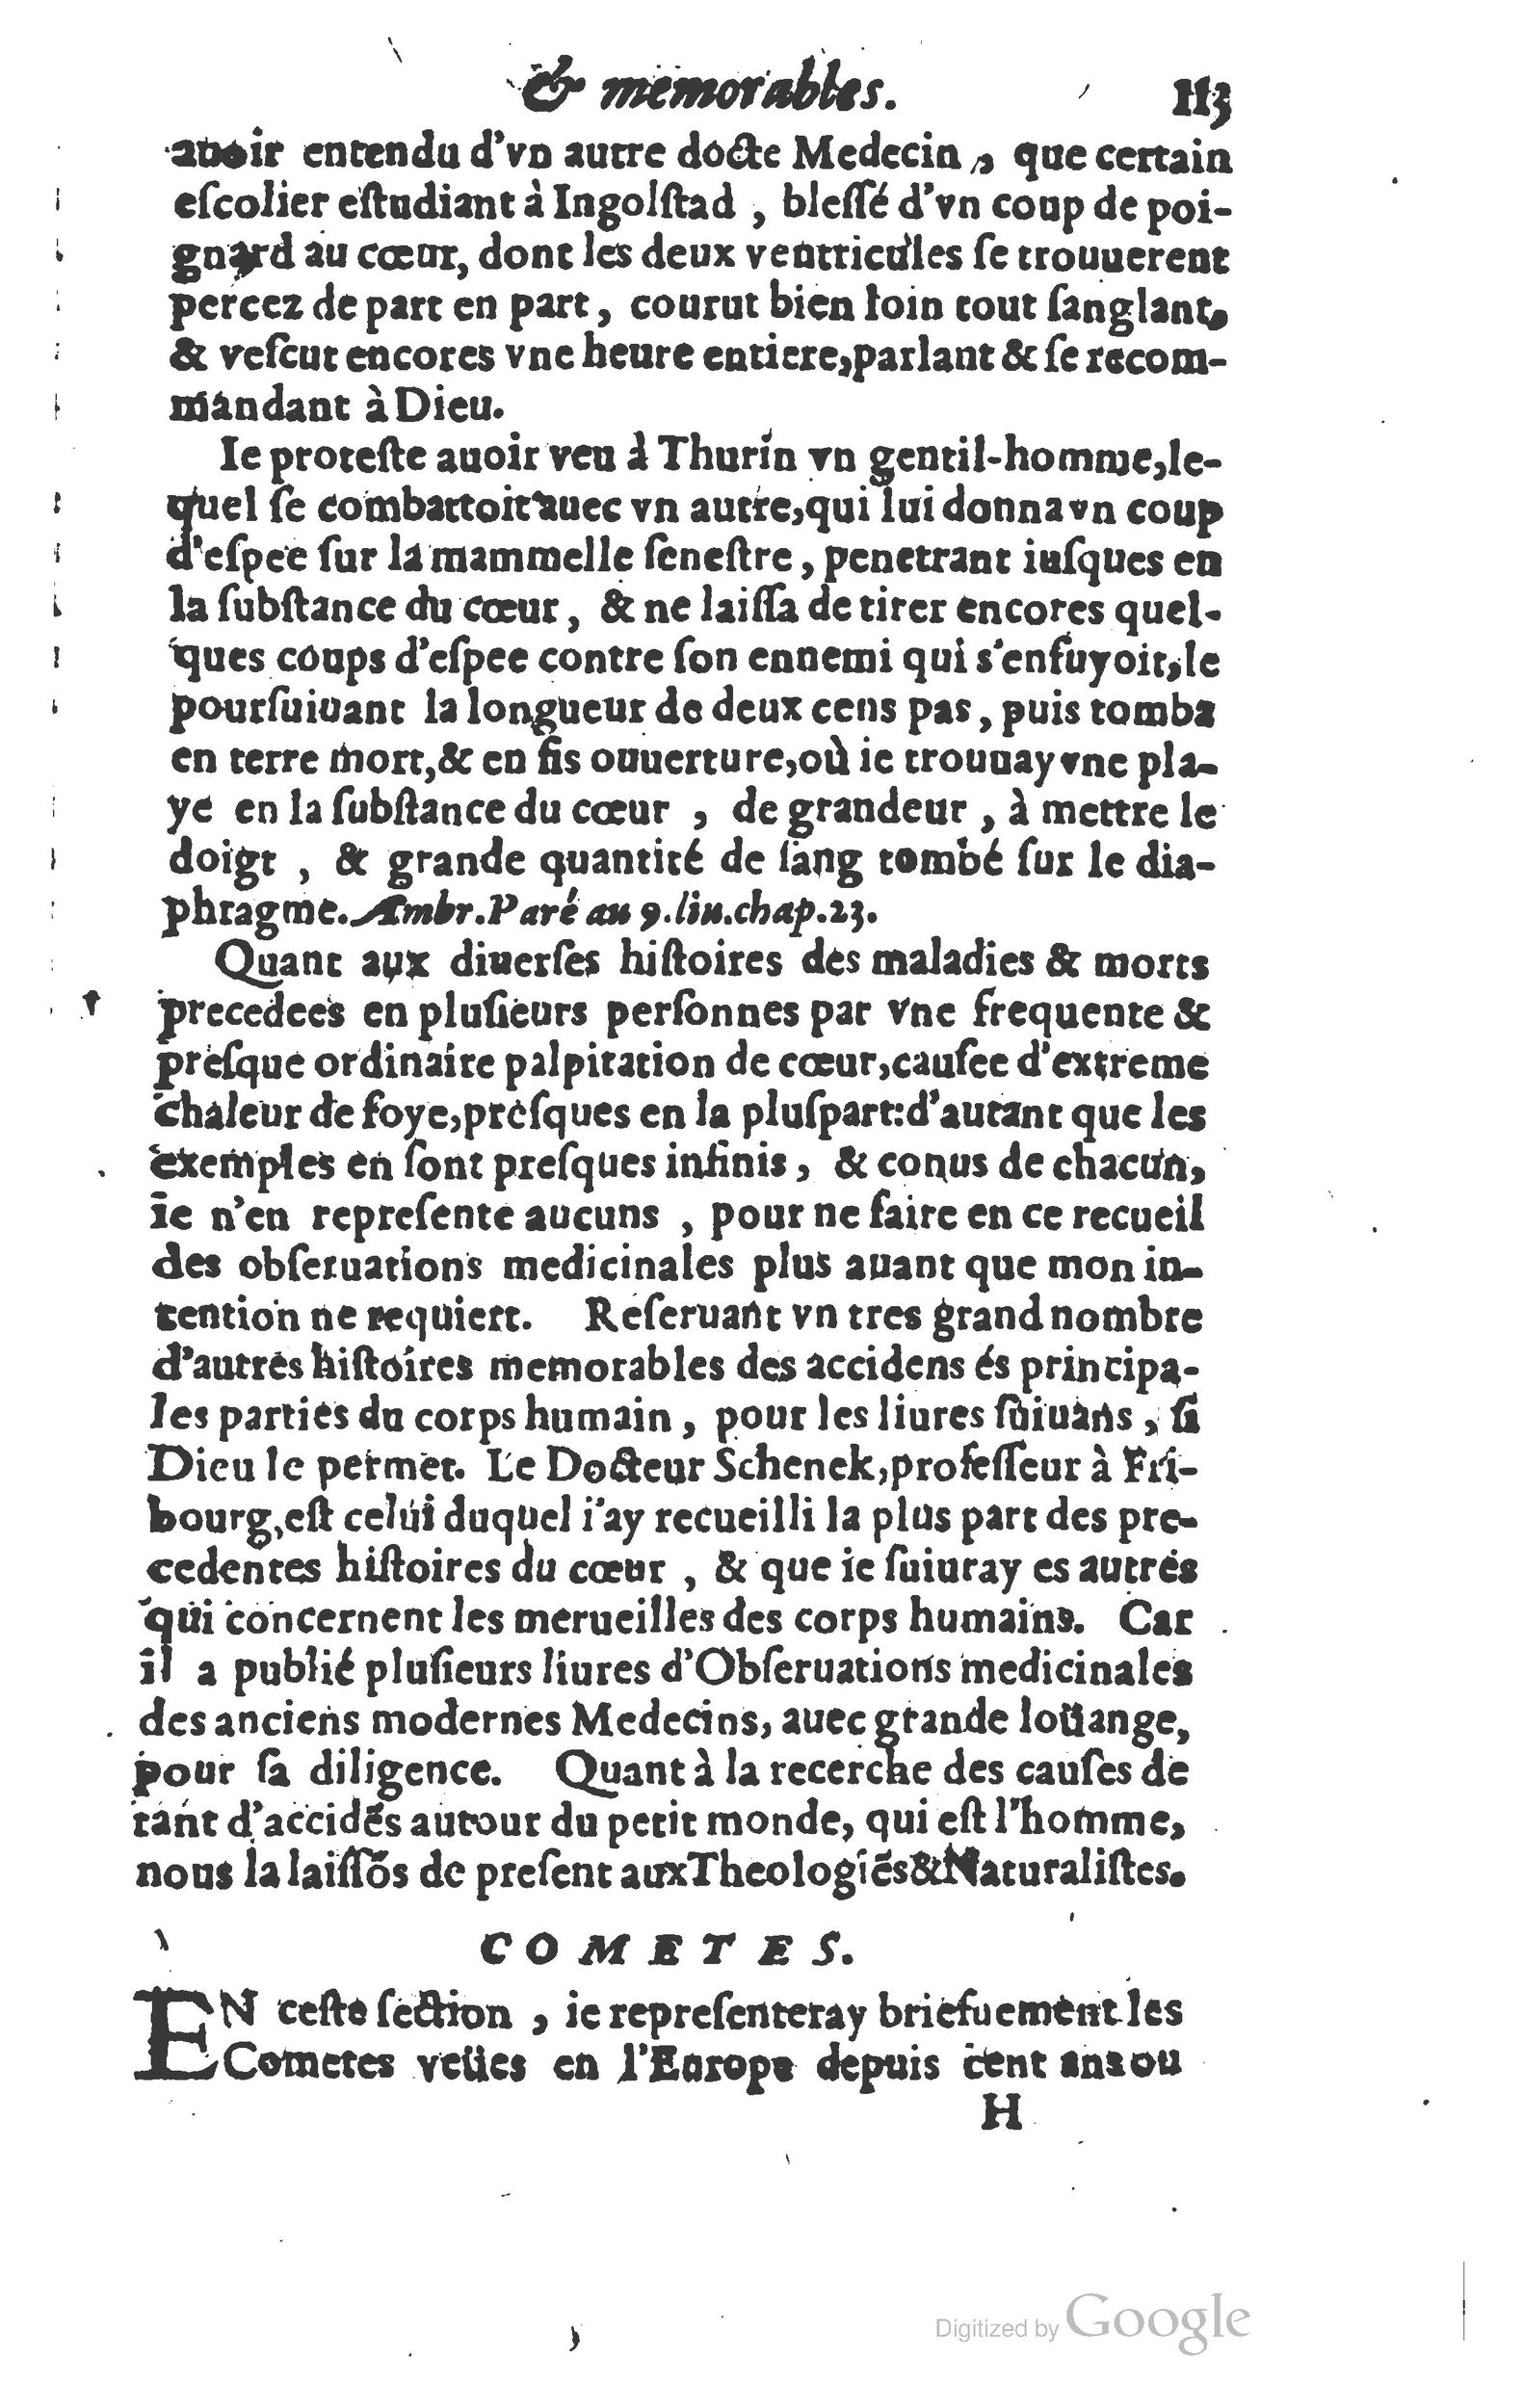 1610 Trésor d’histoires admirables et mémorables de nostre temps Marceau Princeton_Page_0134.jpg